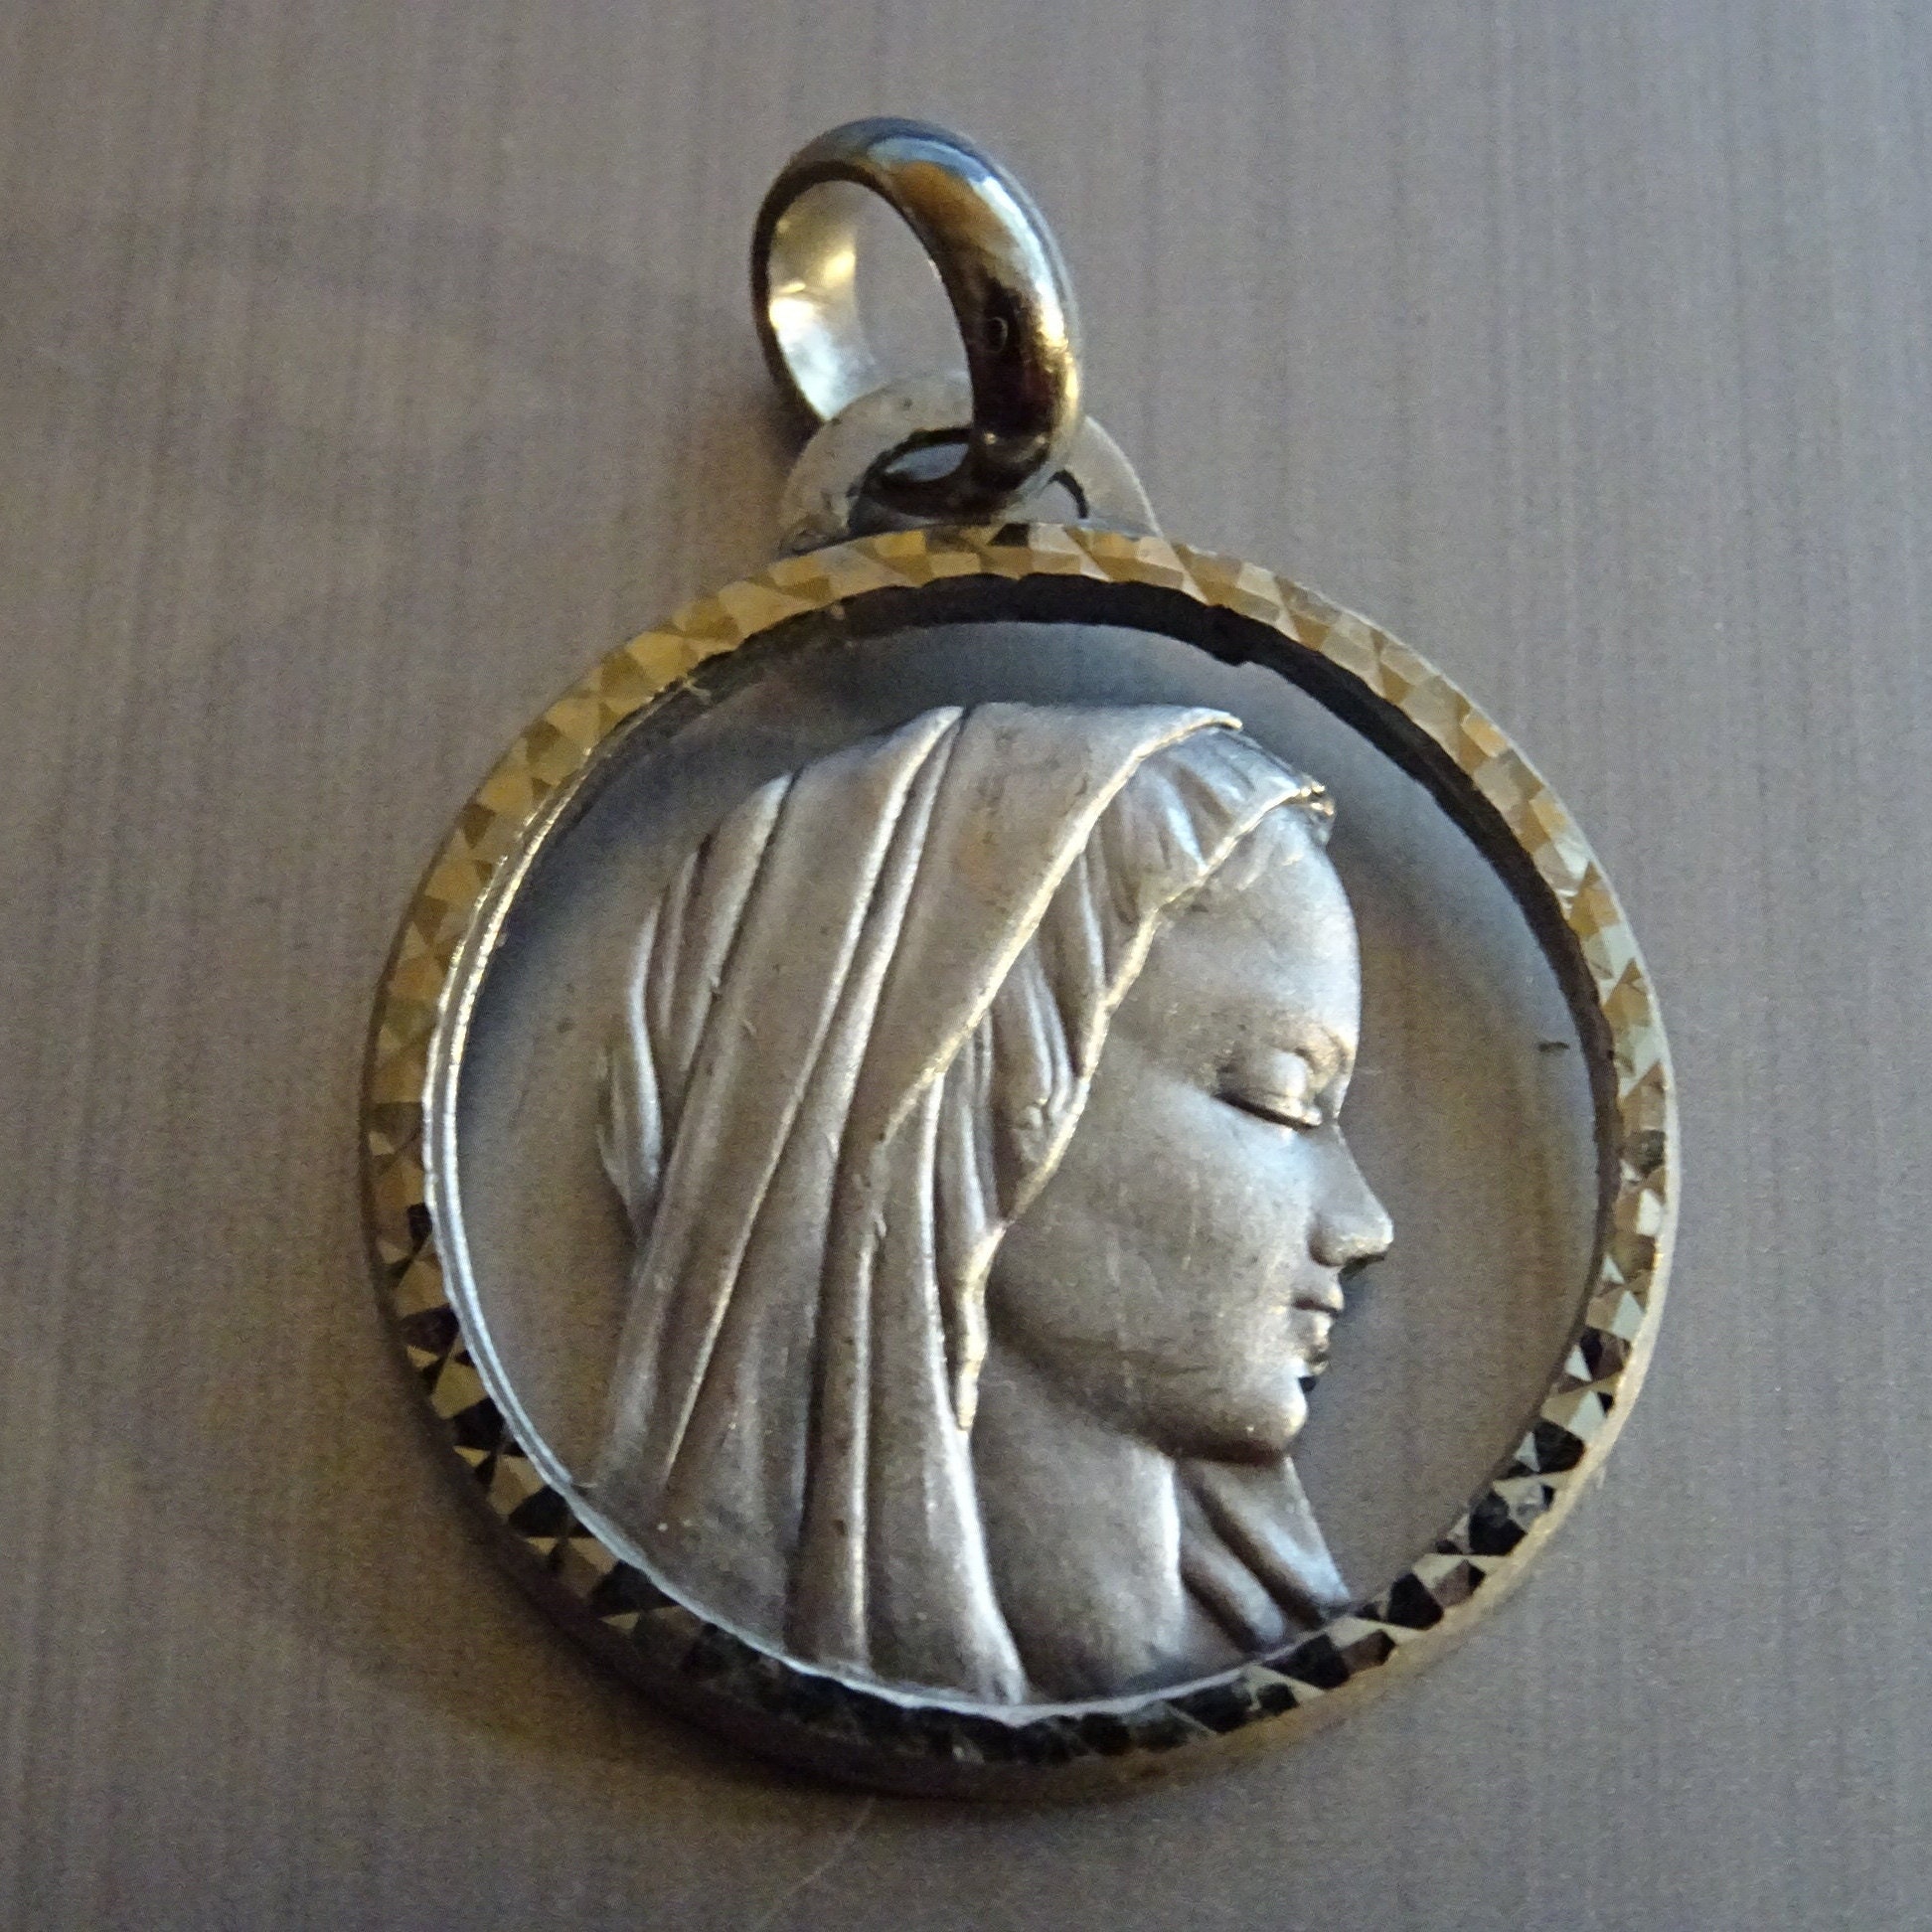 Vierge Marie. Bord Biseauté Découpé. Pendentif Français Religieux Antique. Médaille Médaillon Saint 